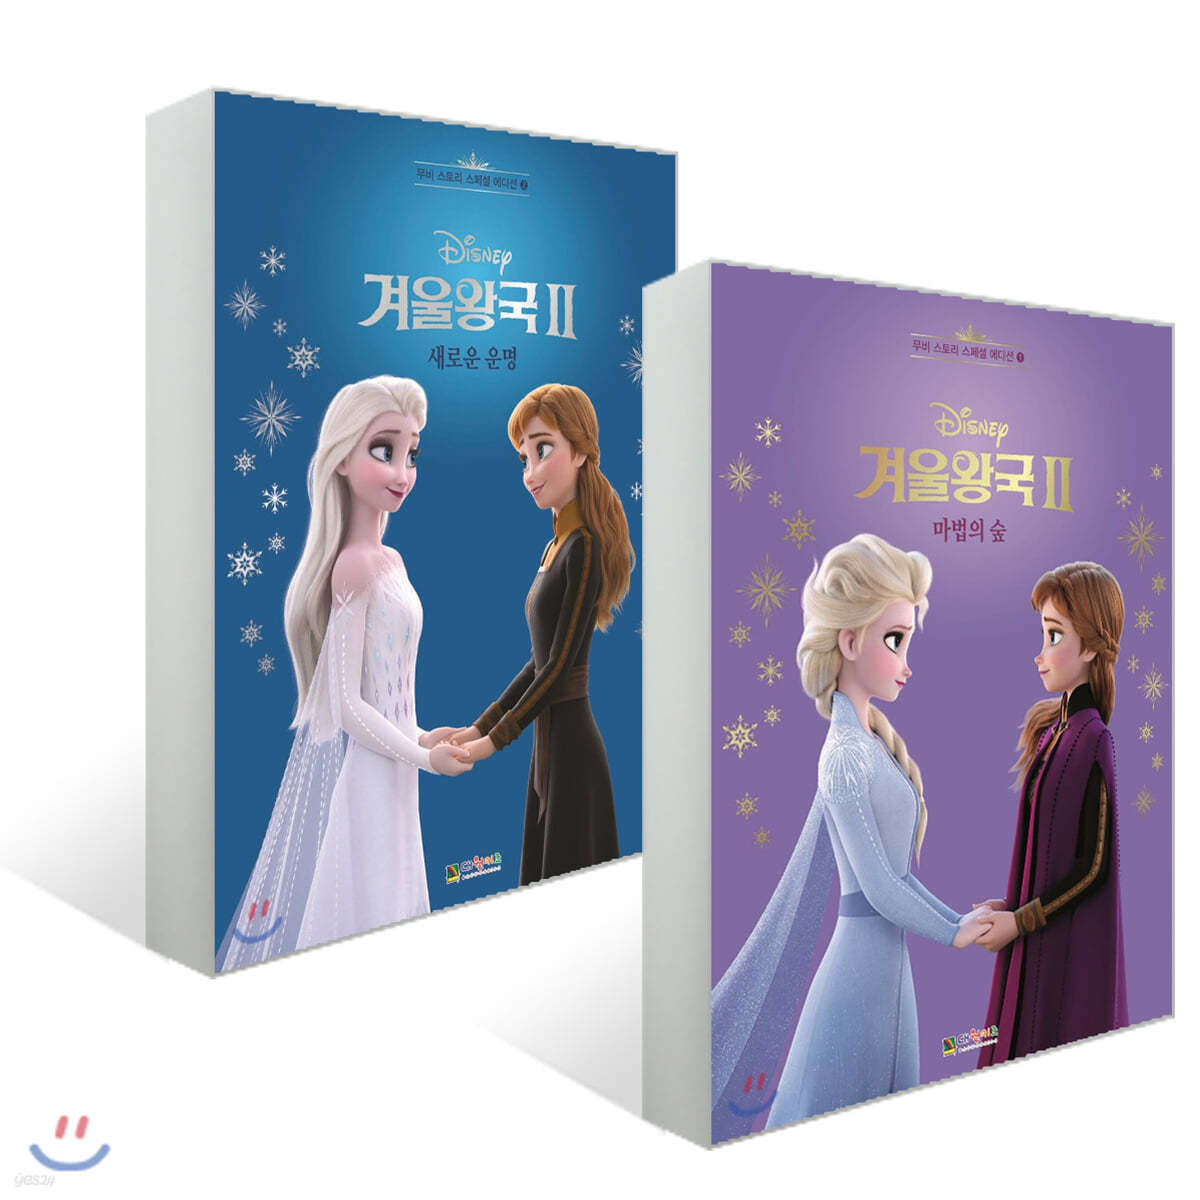 겨울왕국 무비스토리 스페셜에디션 2종 세트